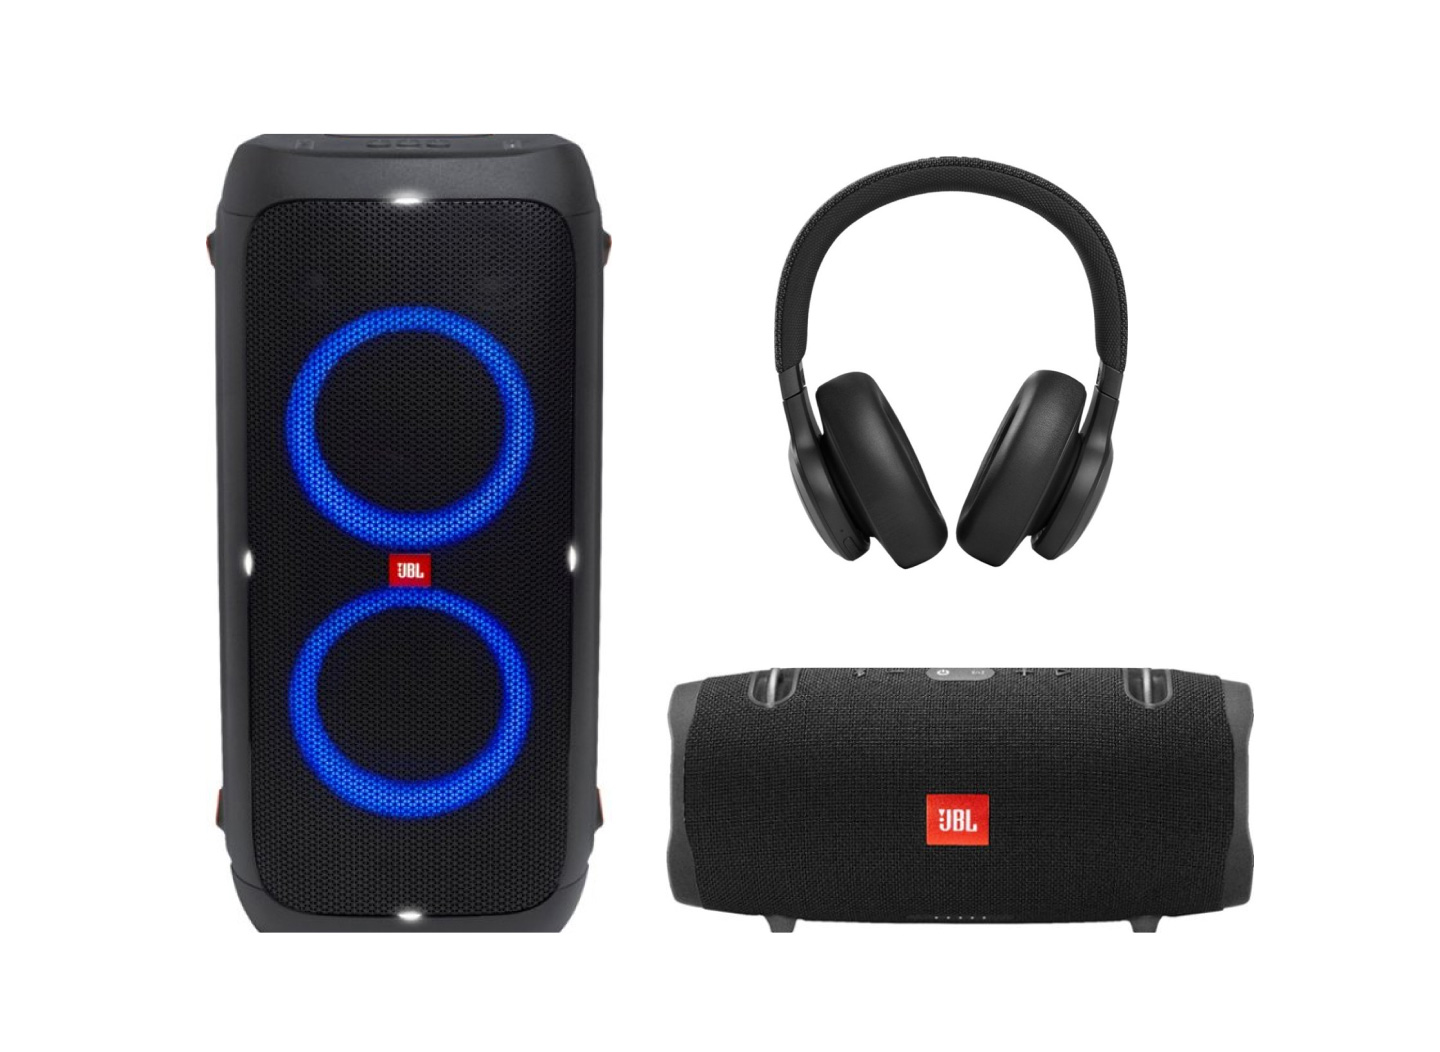 JBL speakers and headphones